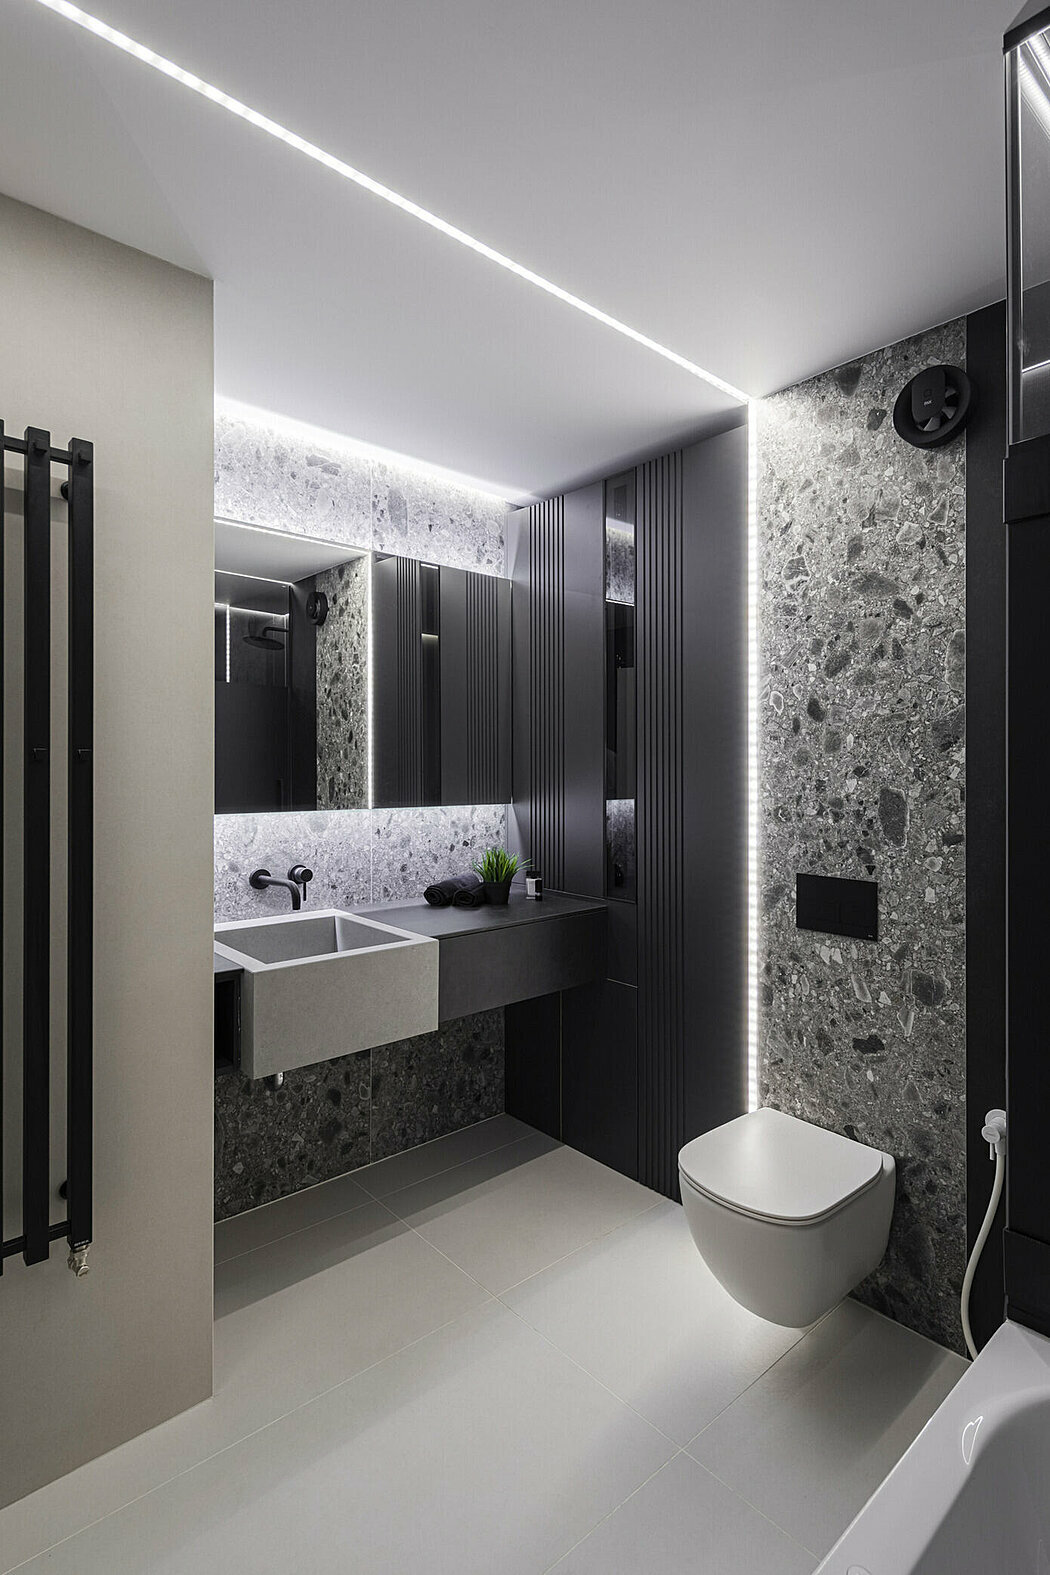 A fürdőszoba részlete kőszemcse mintás lapokkal és rejtet led fénnyel